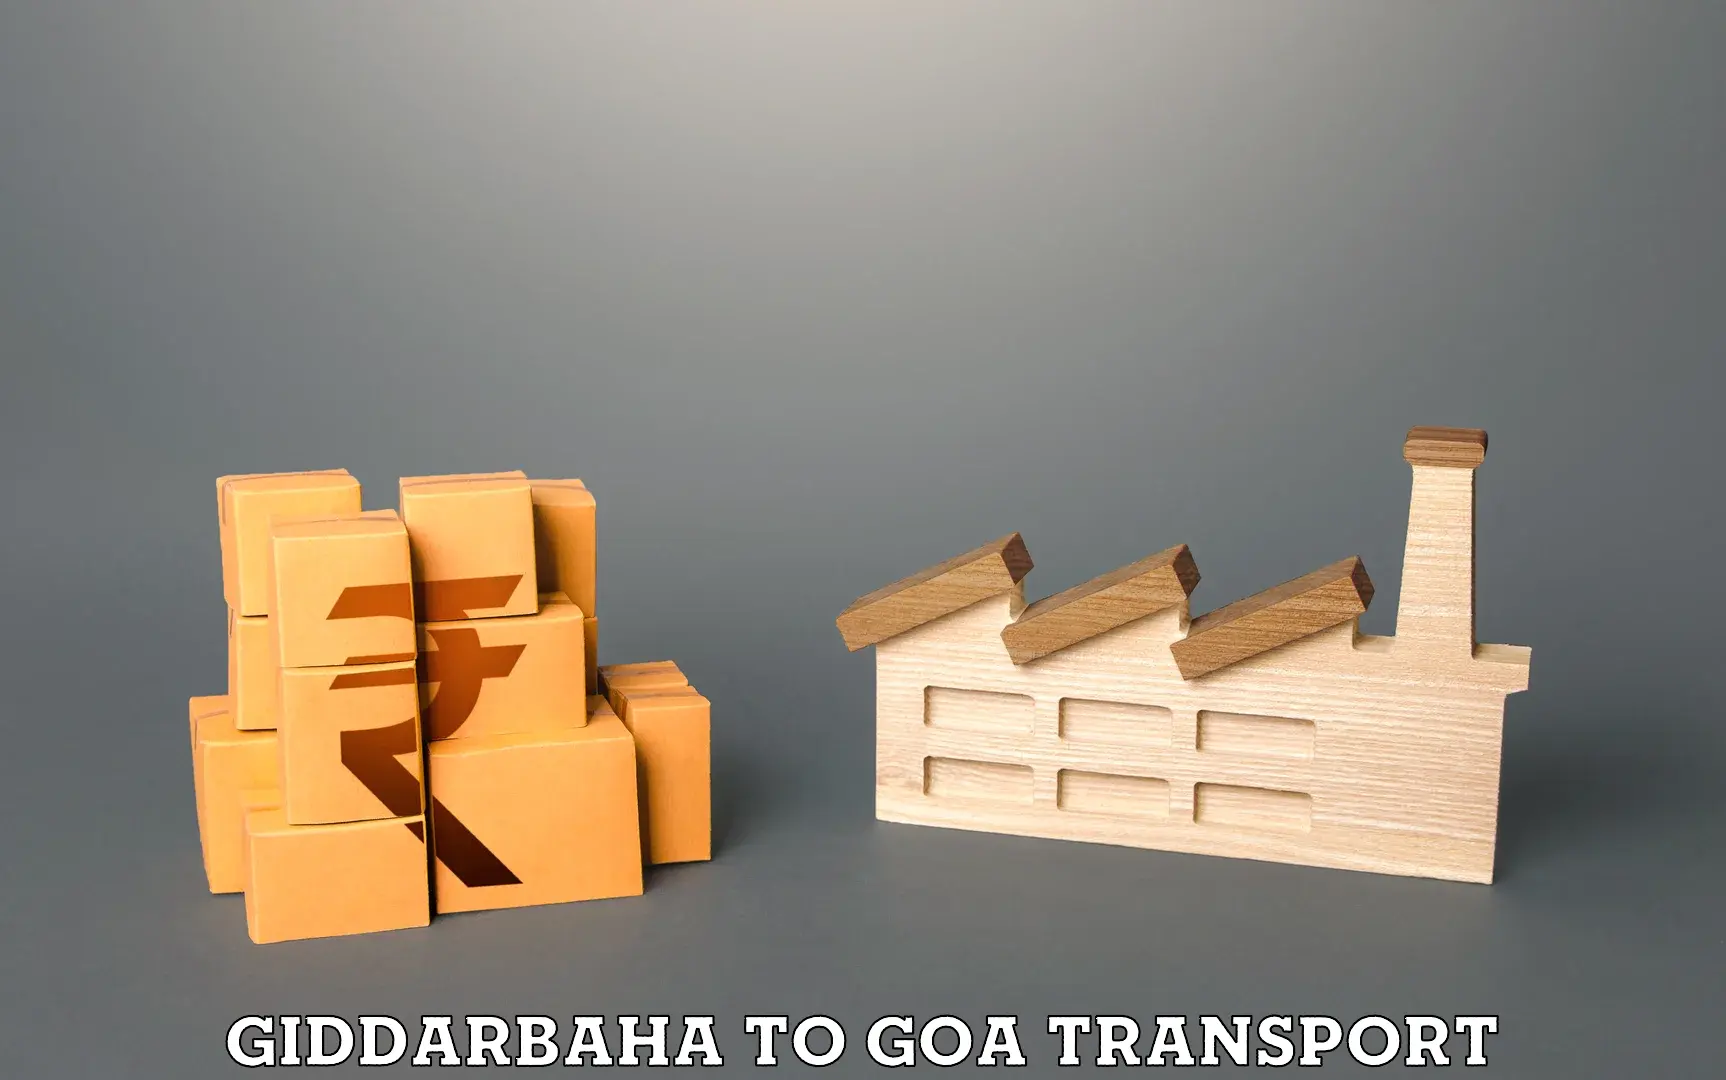 Road transport services in Giddarbaha to Vasco da Gama